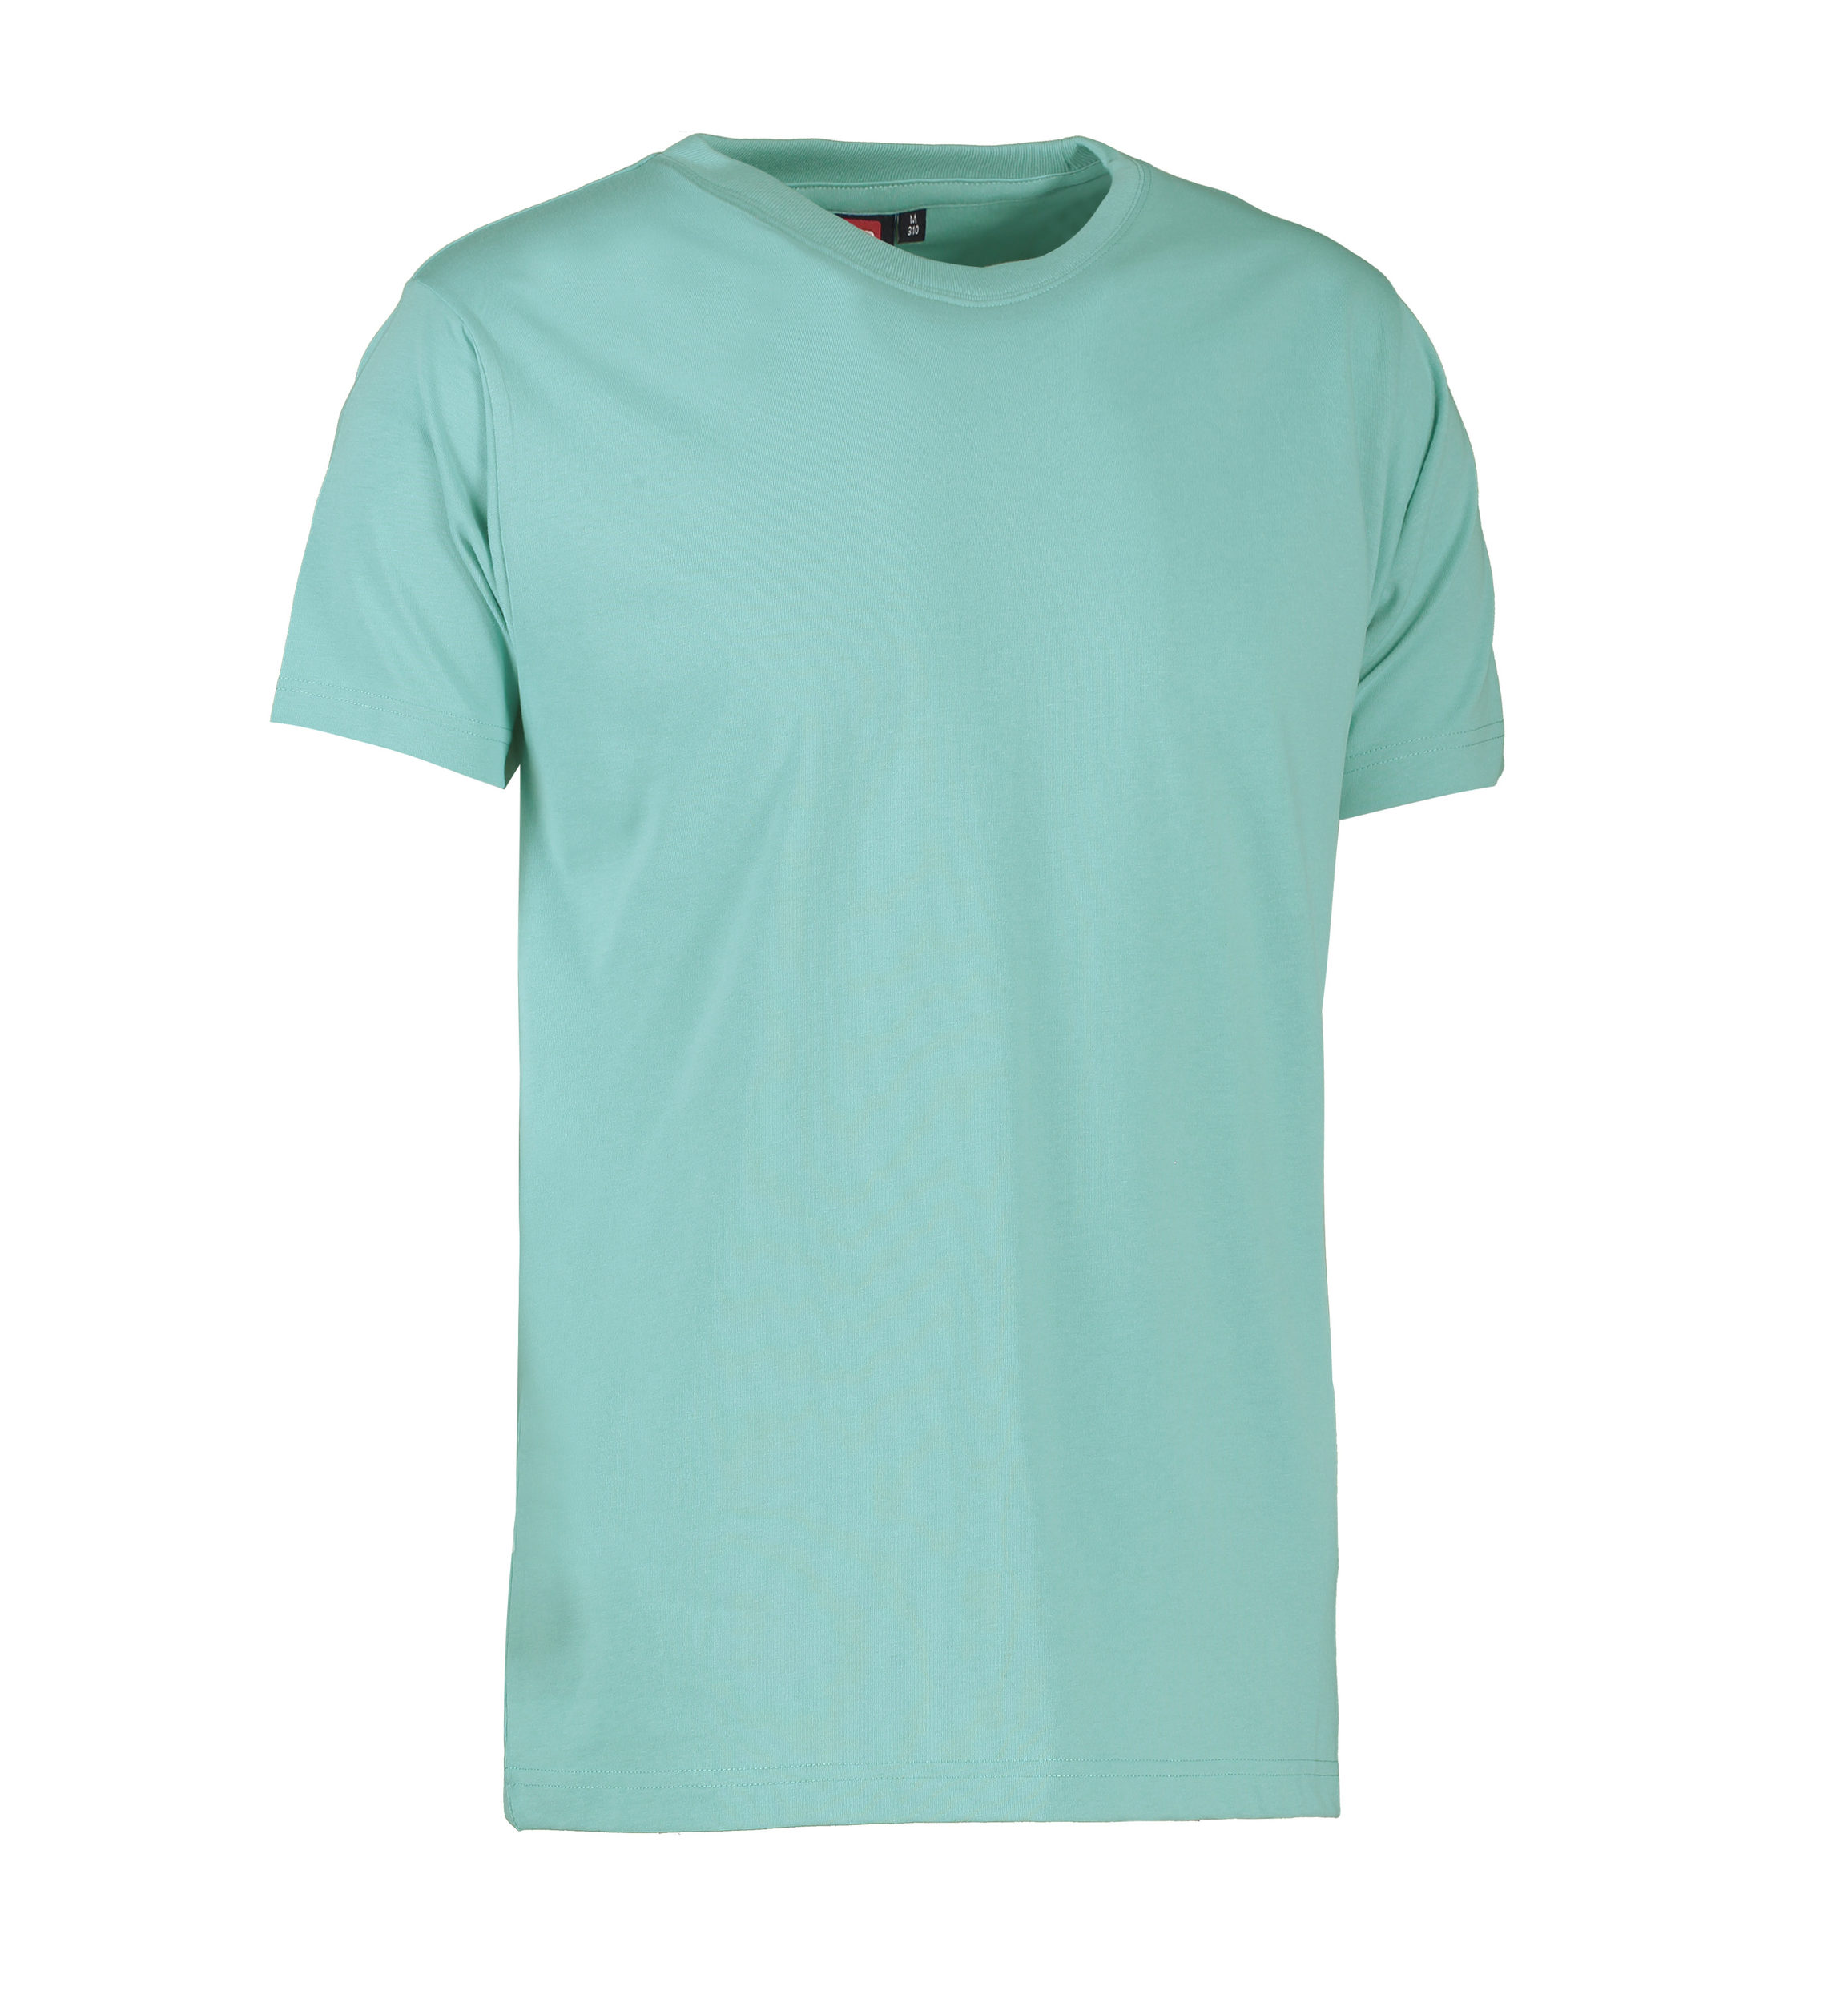 Se Slidstærk t-shirt i lys grøn til mænd - XL hos Sygeplejebutikken.dk